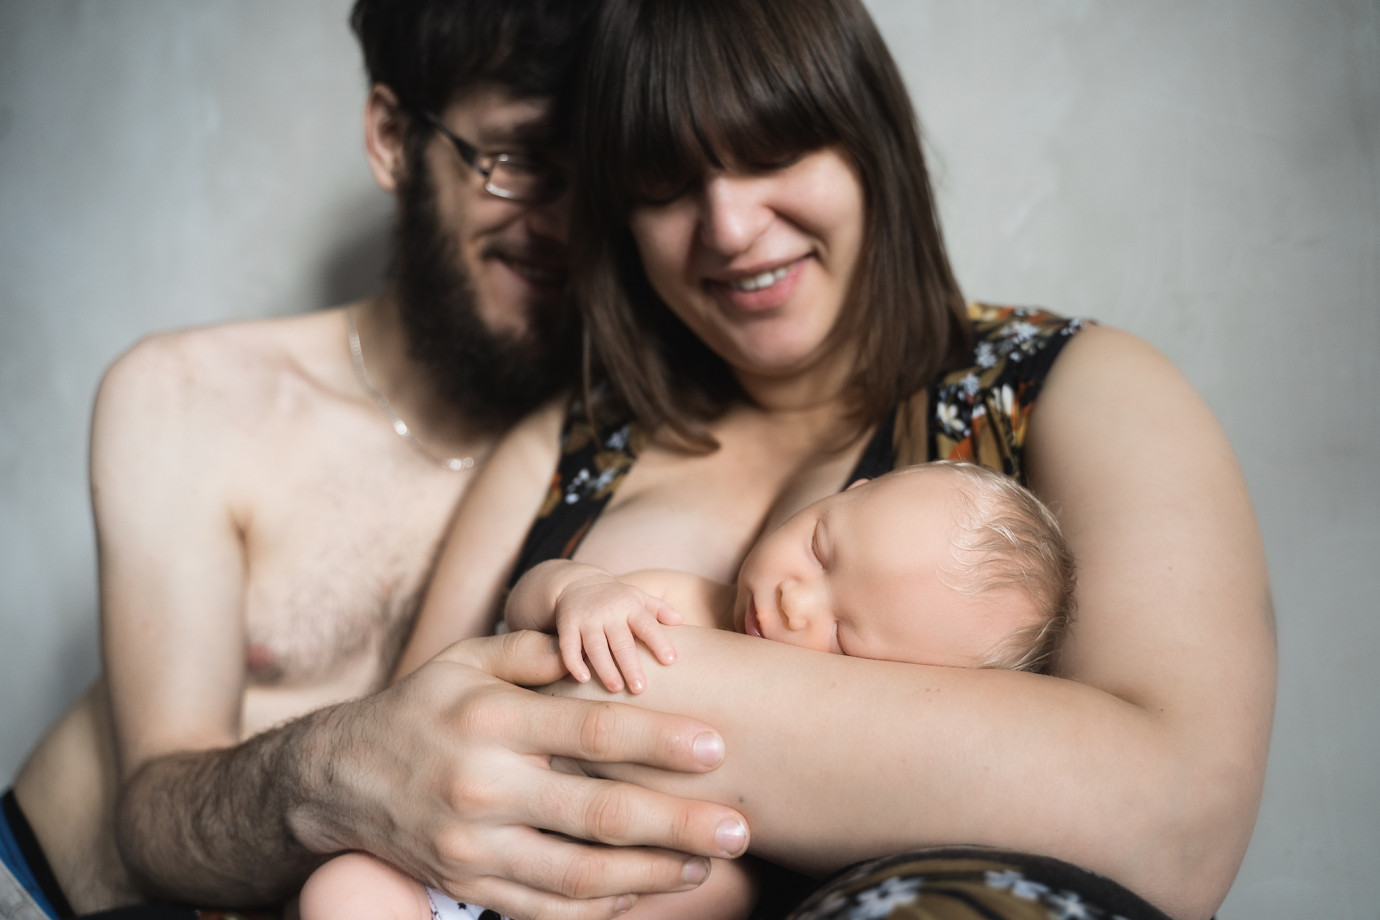 zdjęcia krakow fotograf joanna-dudek-fotografia portfolio zdjecia noworodkow sesje noworodkowe niemowlę